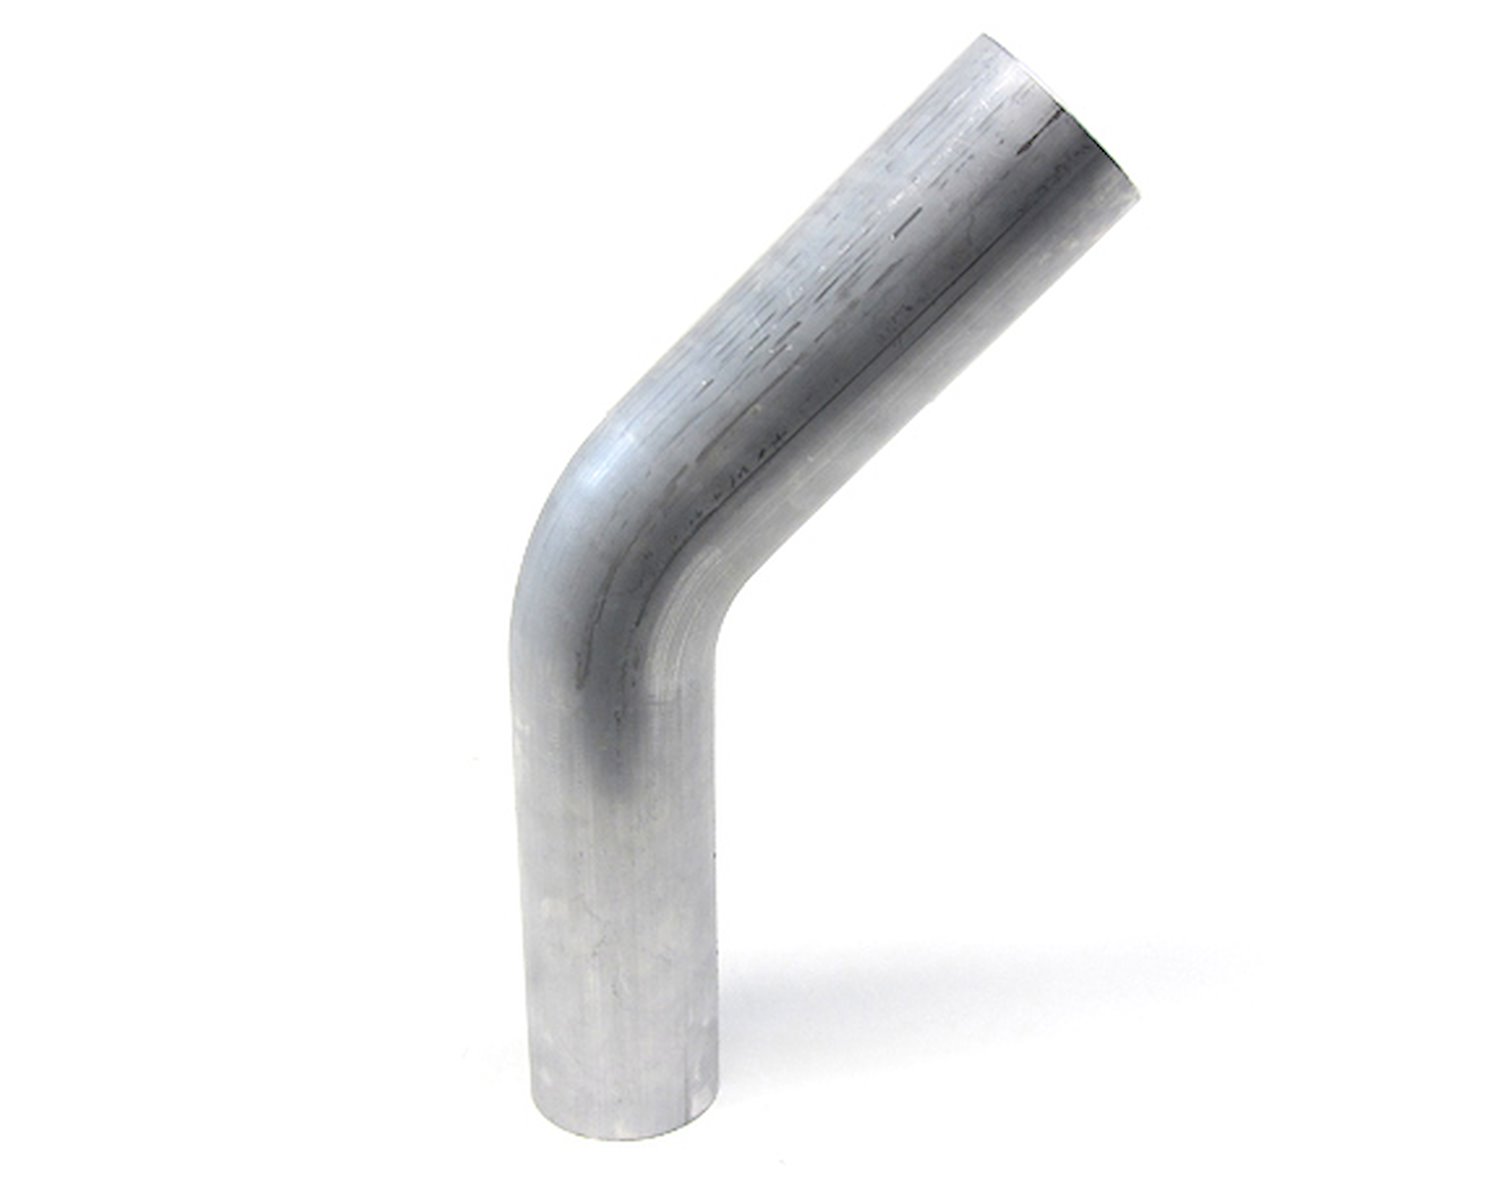 AT45-200-CLR-312 Aluminum Elbow Tube, 6061 Aluminum, 45-Degree Bend Elbow Tubing, 2 in. OD, Large Radius, 3 1/8 in. CLR